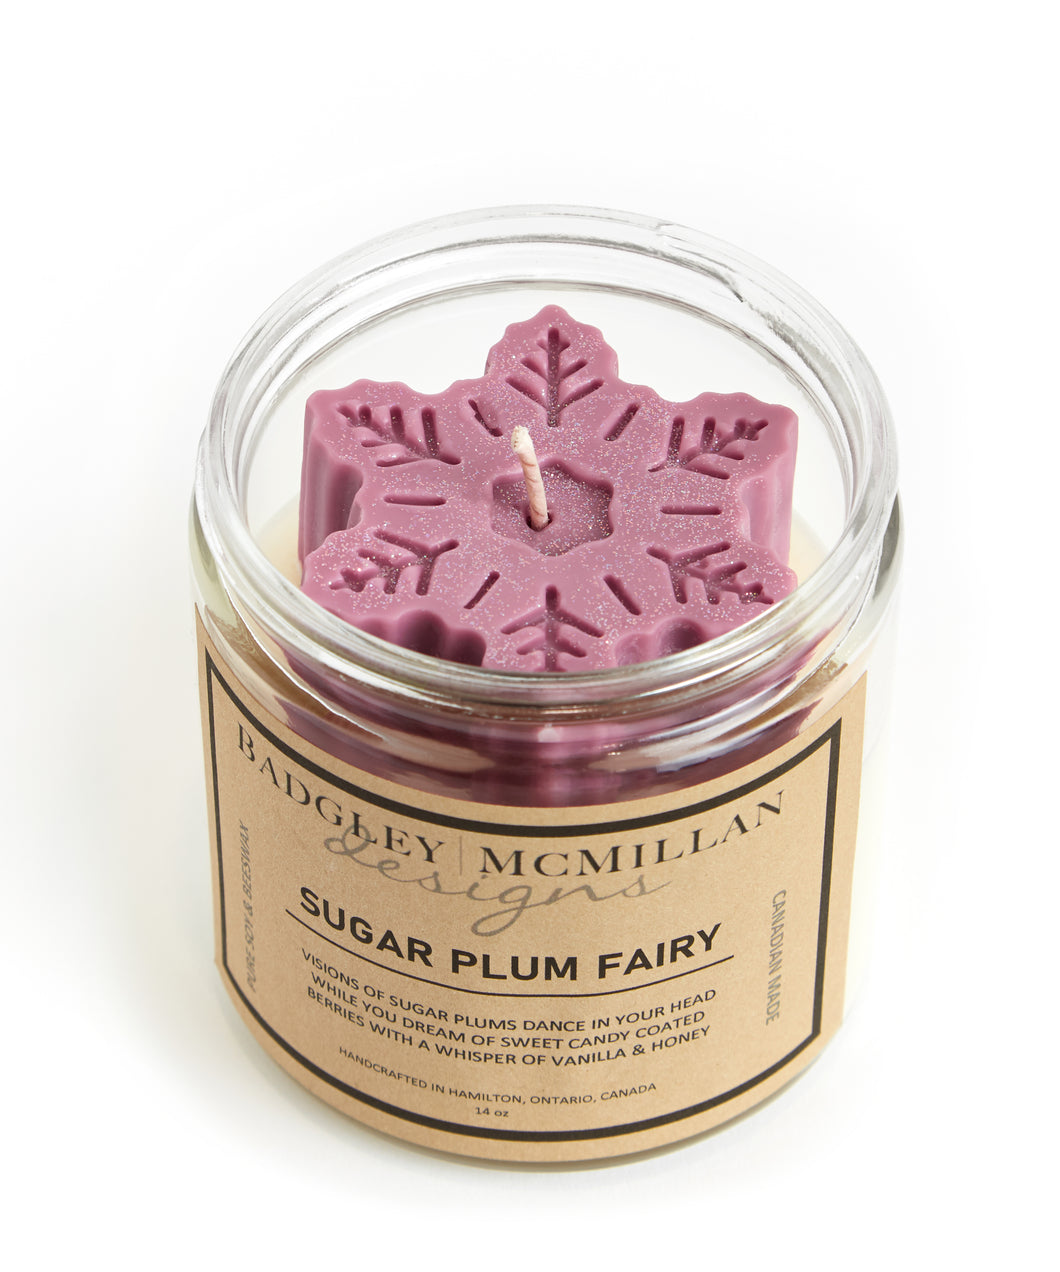 Sugar Plum Fairy Specialty 14 oz Soy Jar Candle